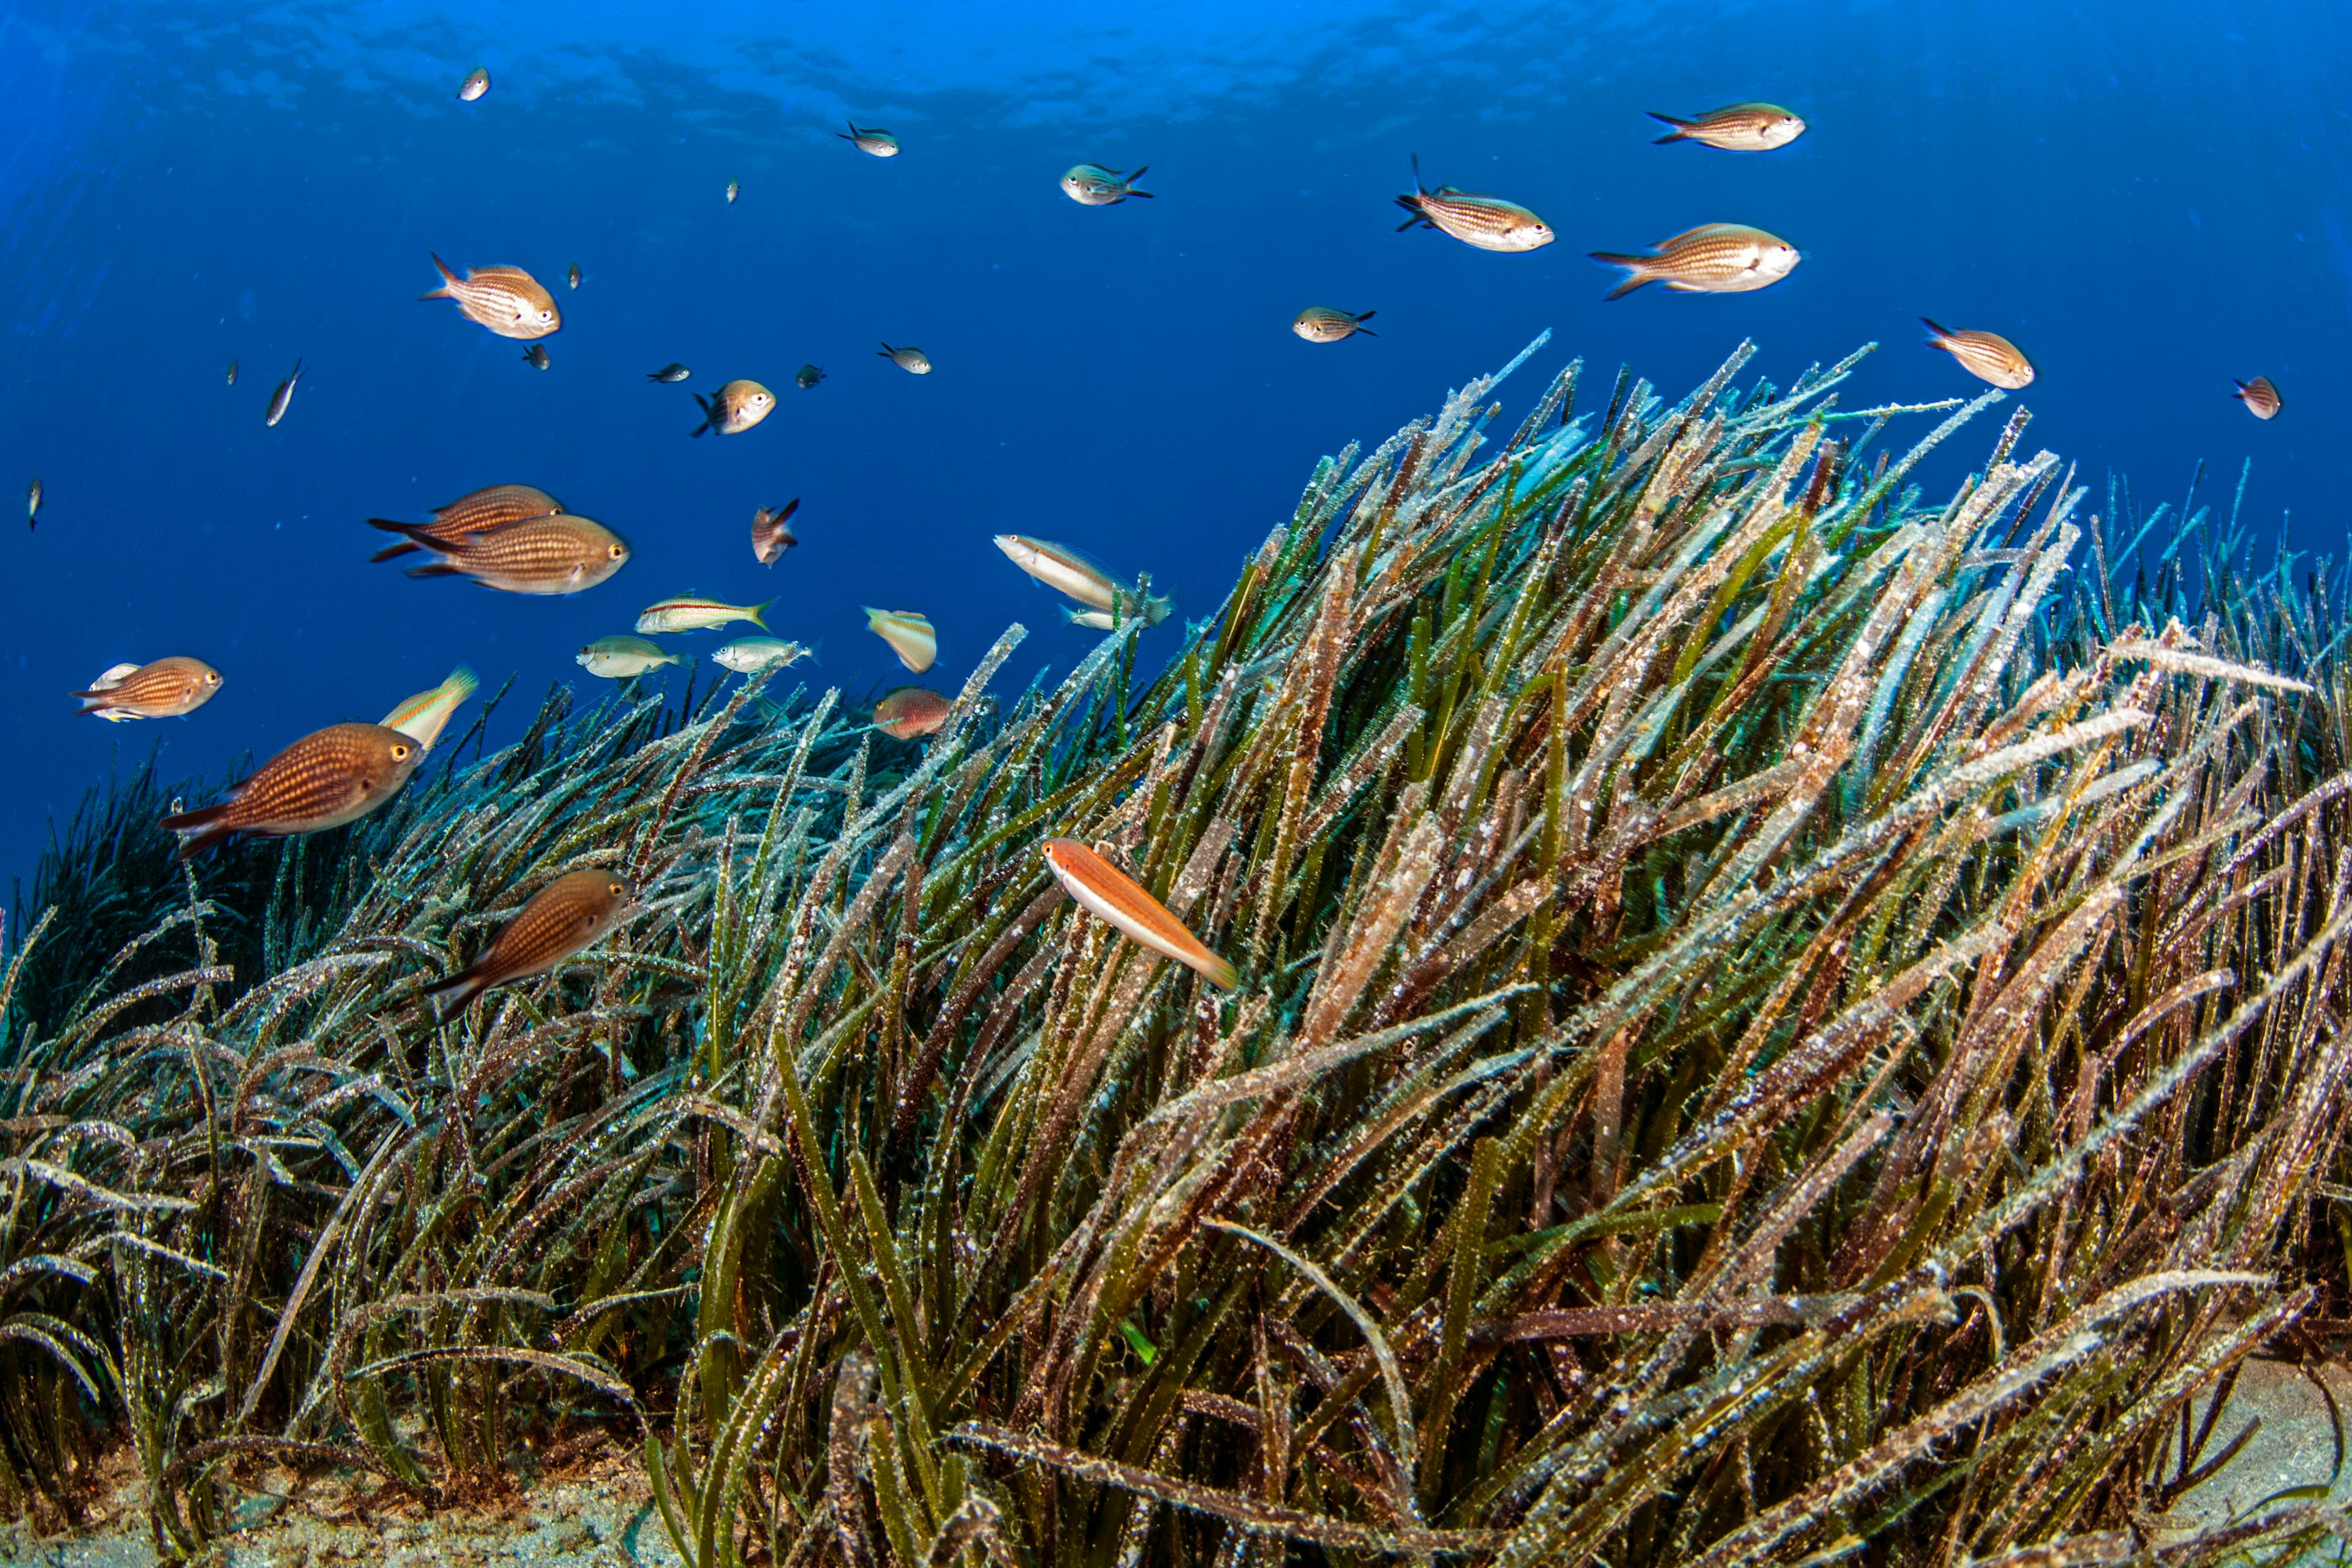 Ocean Image Bank, COP28 image